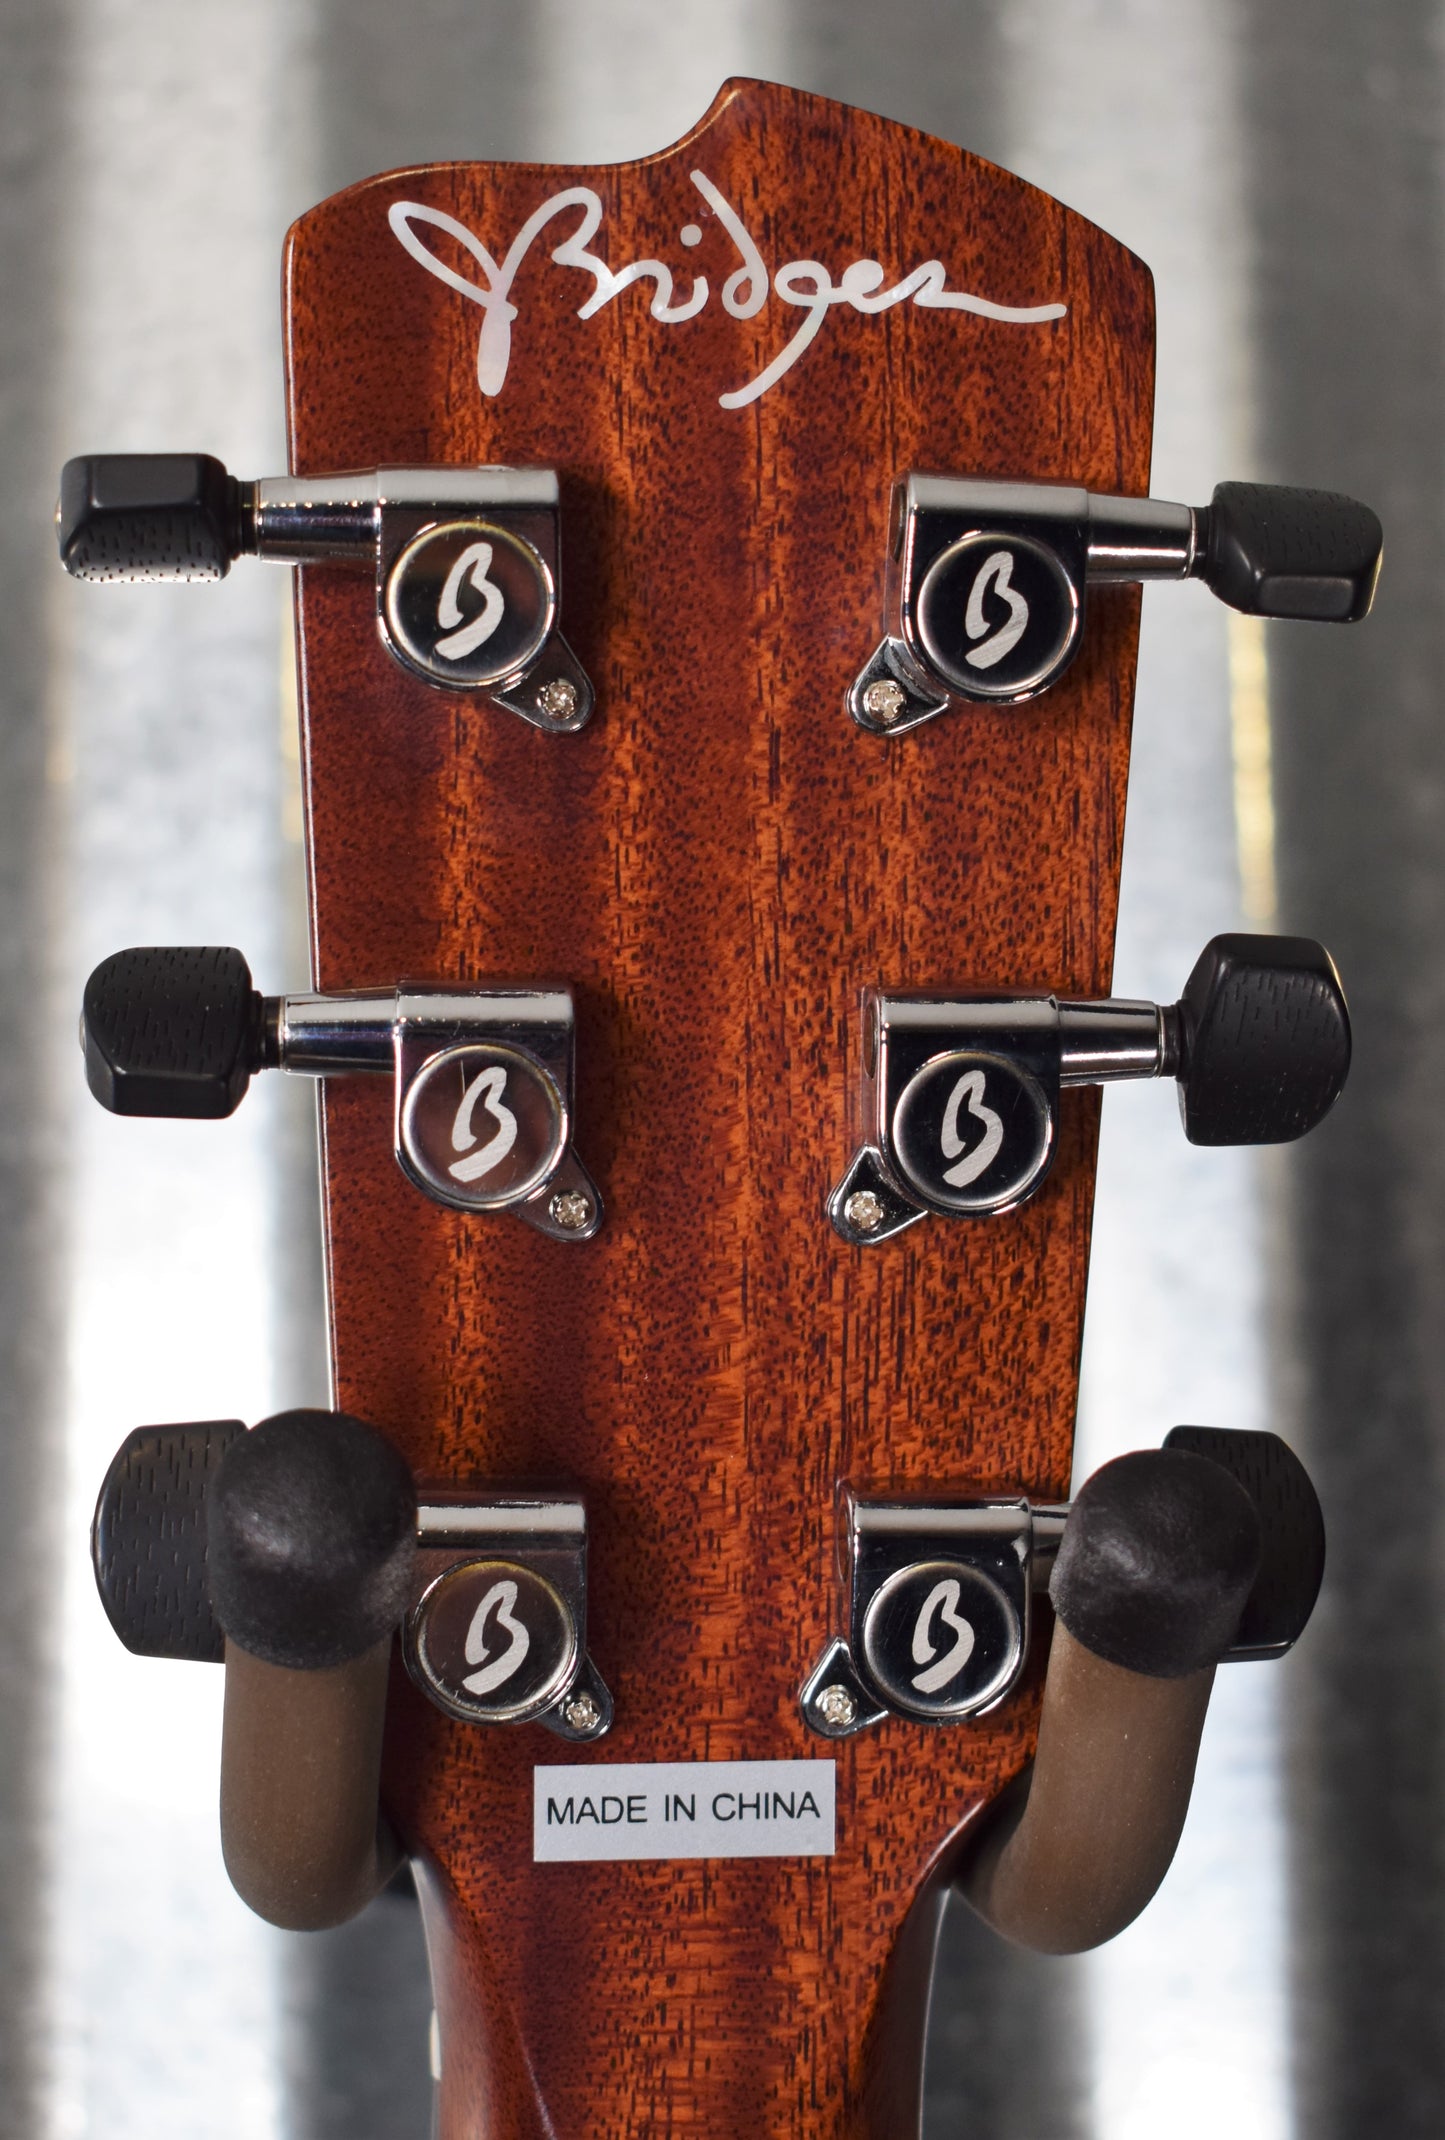 Breedlove Signature Concert Copper E Jeff Bridges Mahogany Acoustic Electric Guitar B Stock #0877